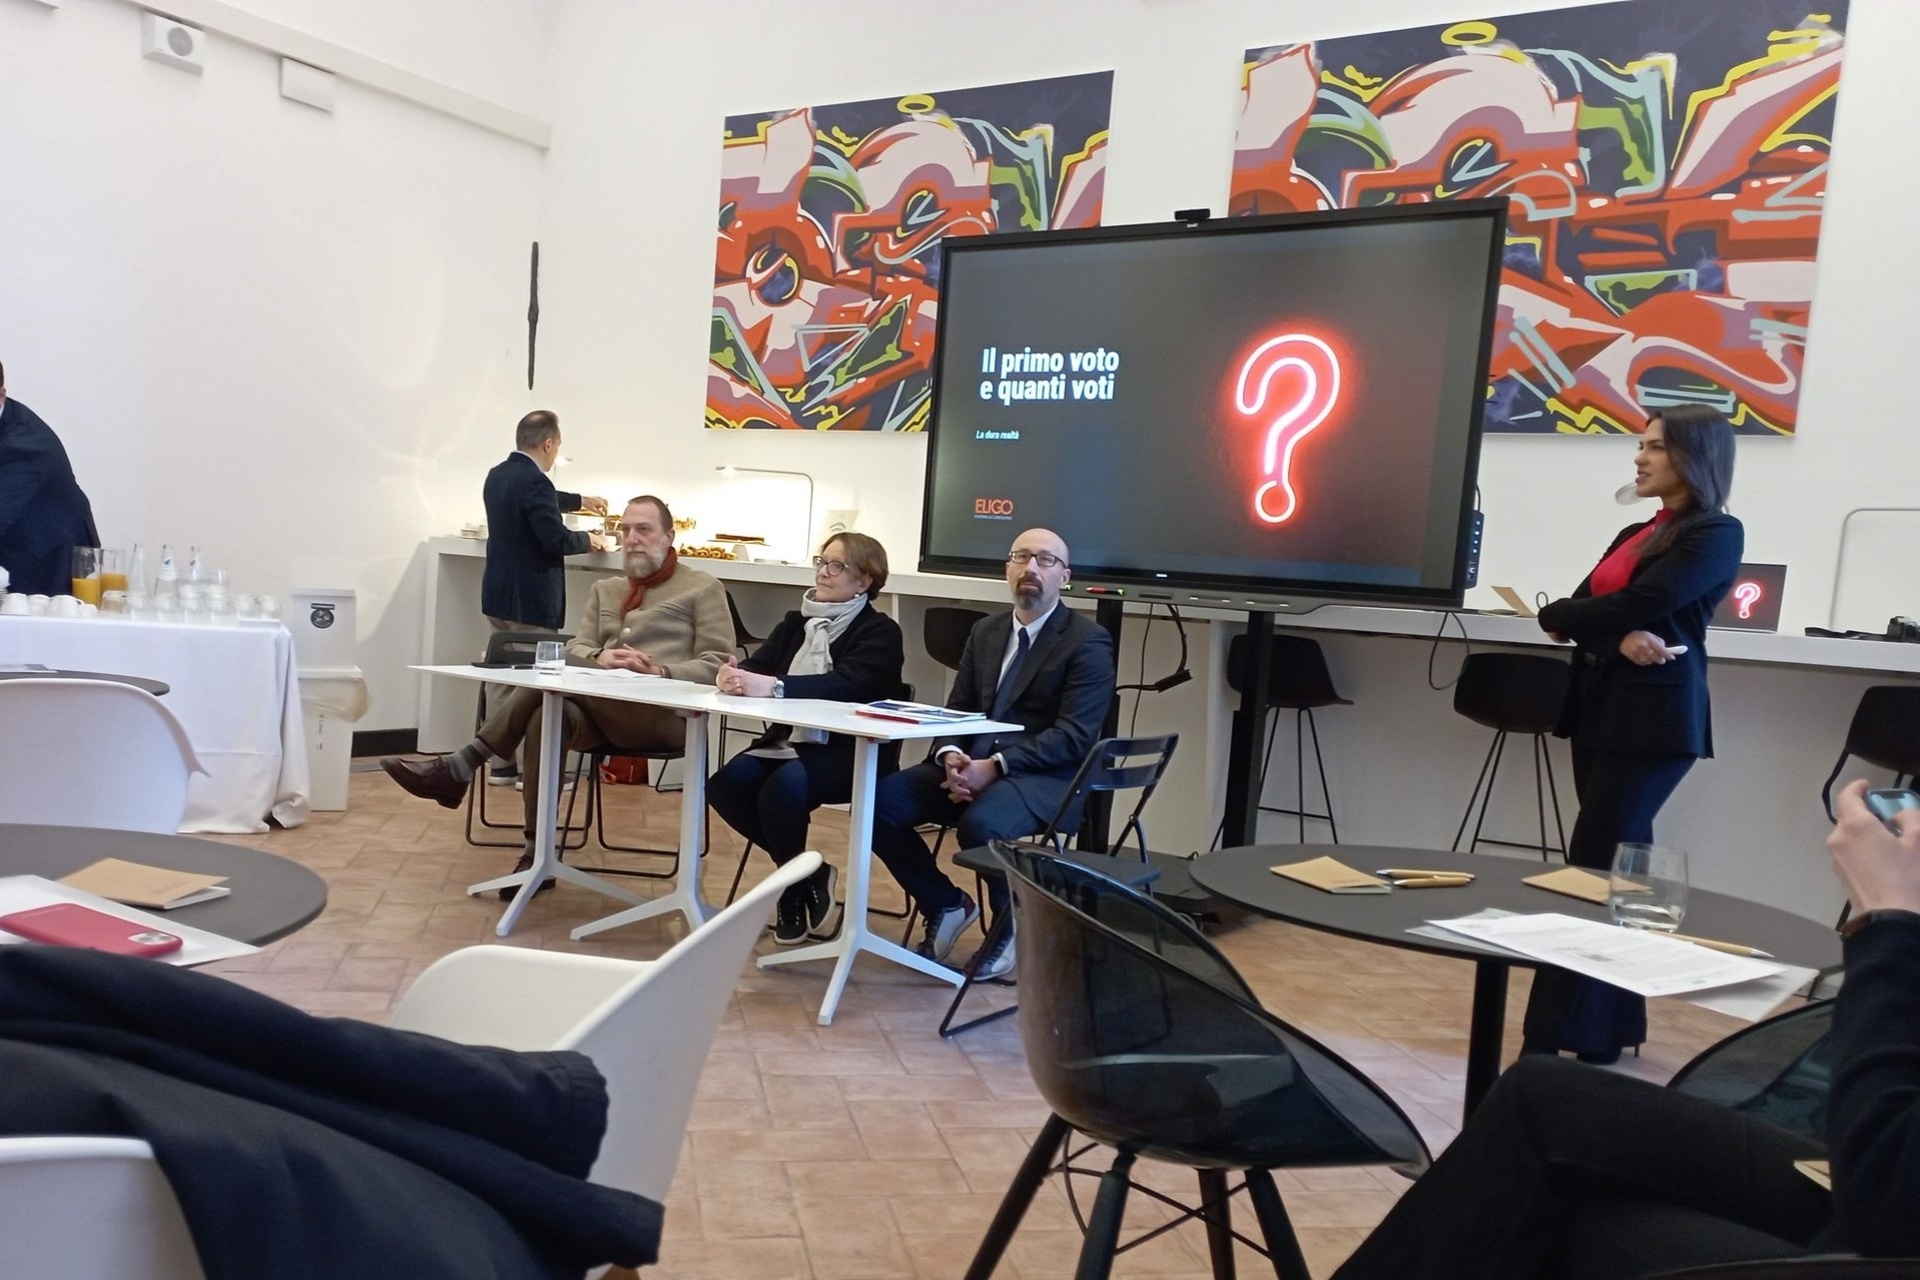 Eligo Next: jaunās Eligo Next elektroniskās un tiešsaistes balsošanas platformas prezentācija Milānā, ko veic uzņēmuma izpilddirektore Irene Pugliatti